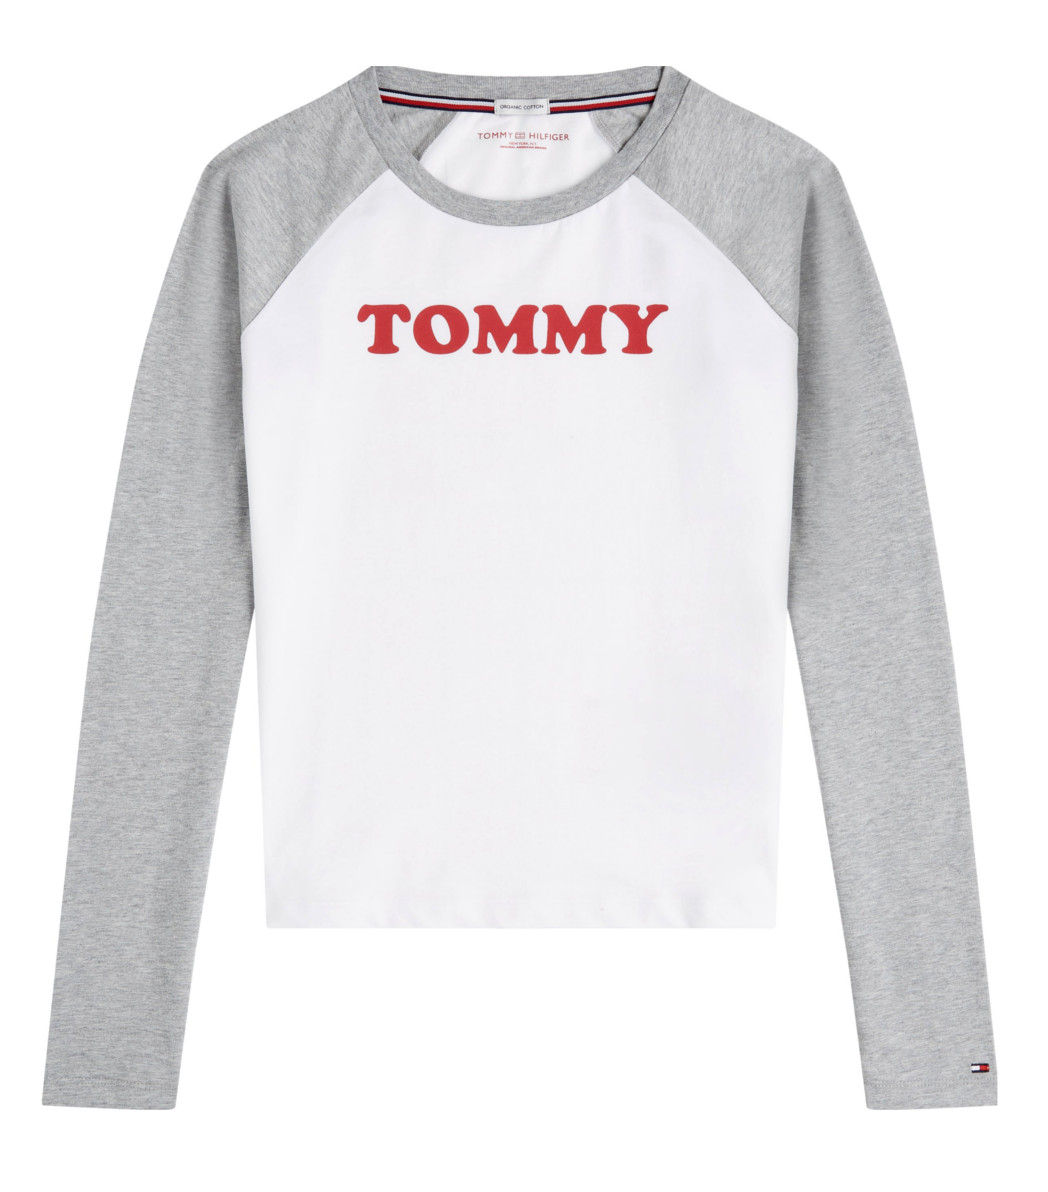 Dámské tričko Tommy Hilfiger UW0UW01906